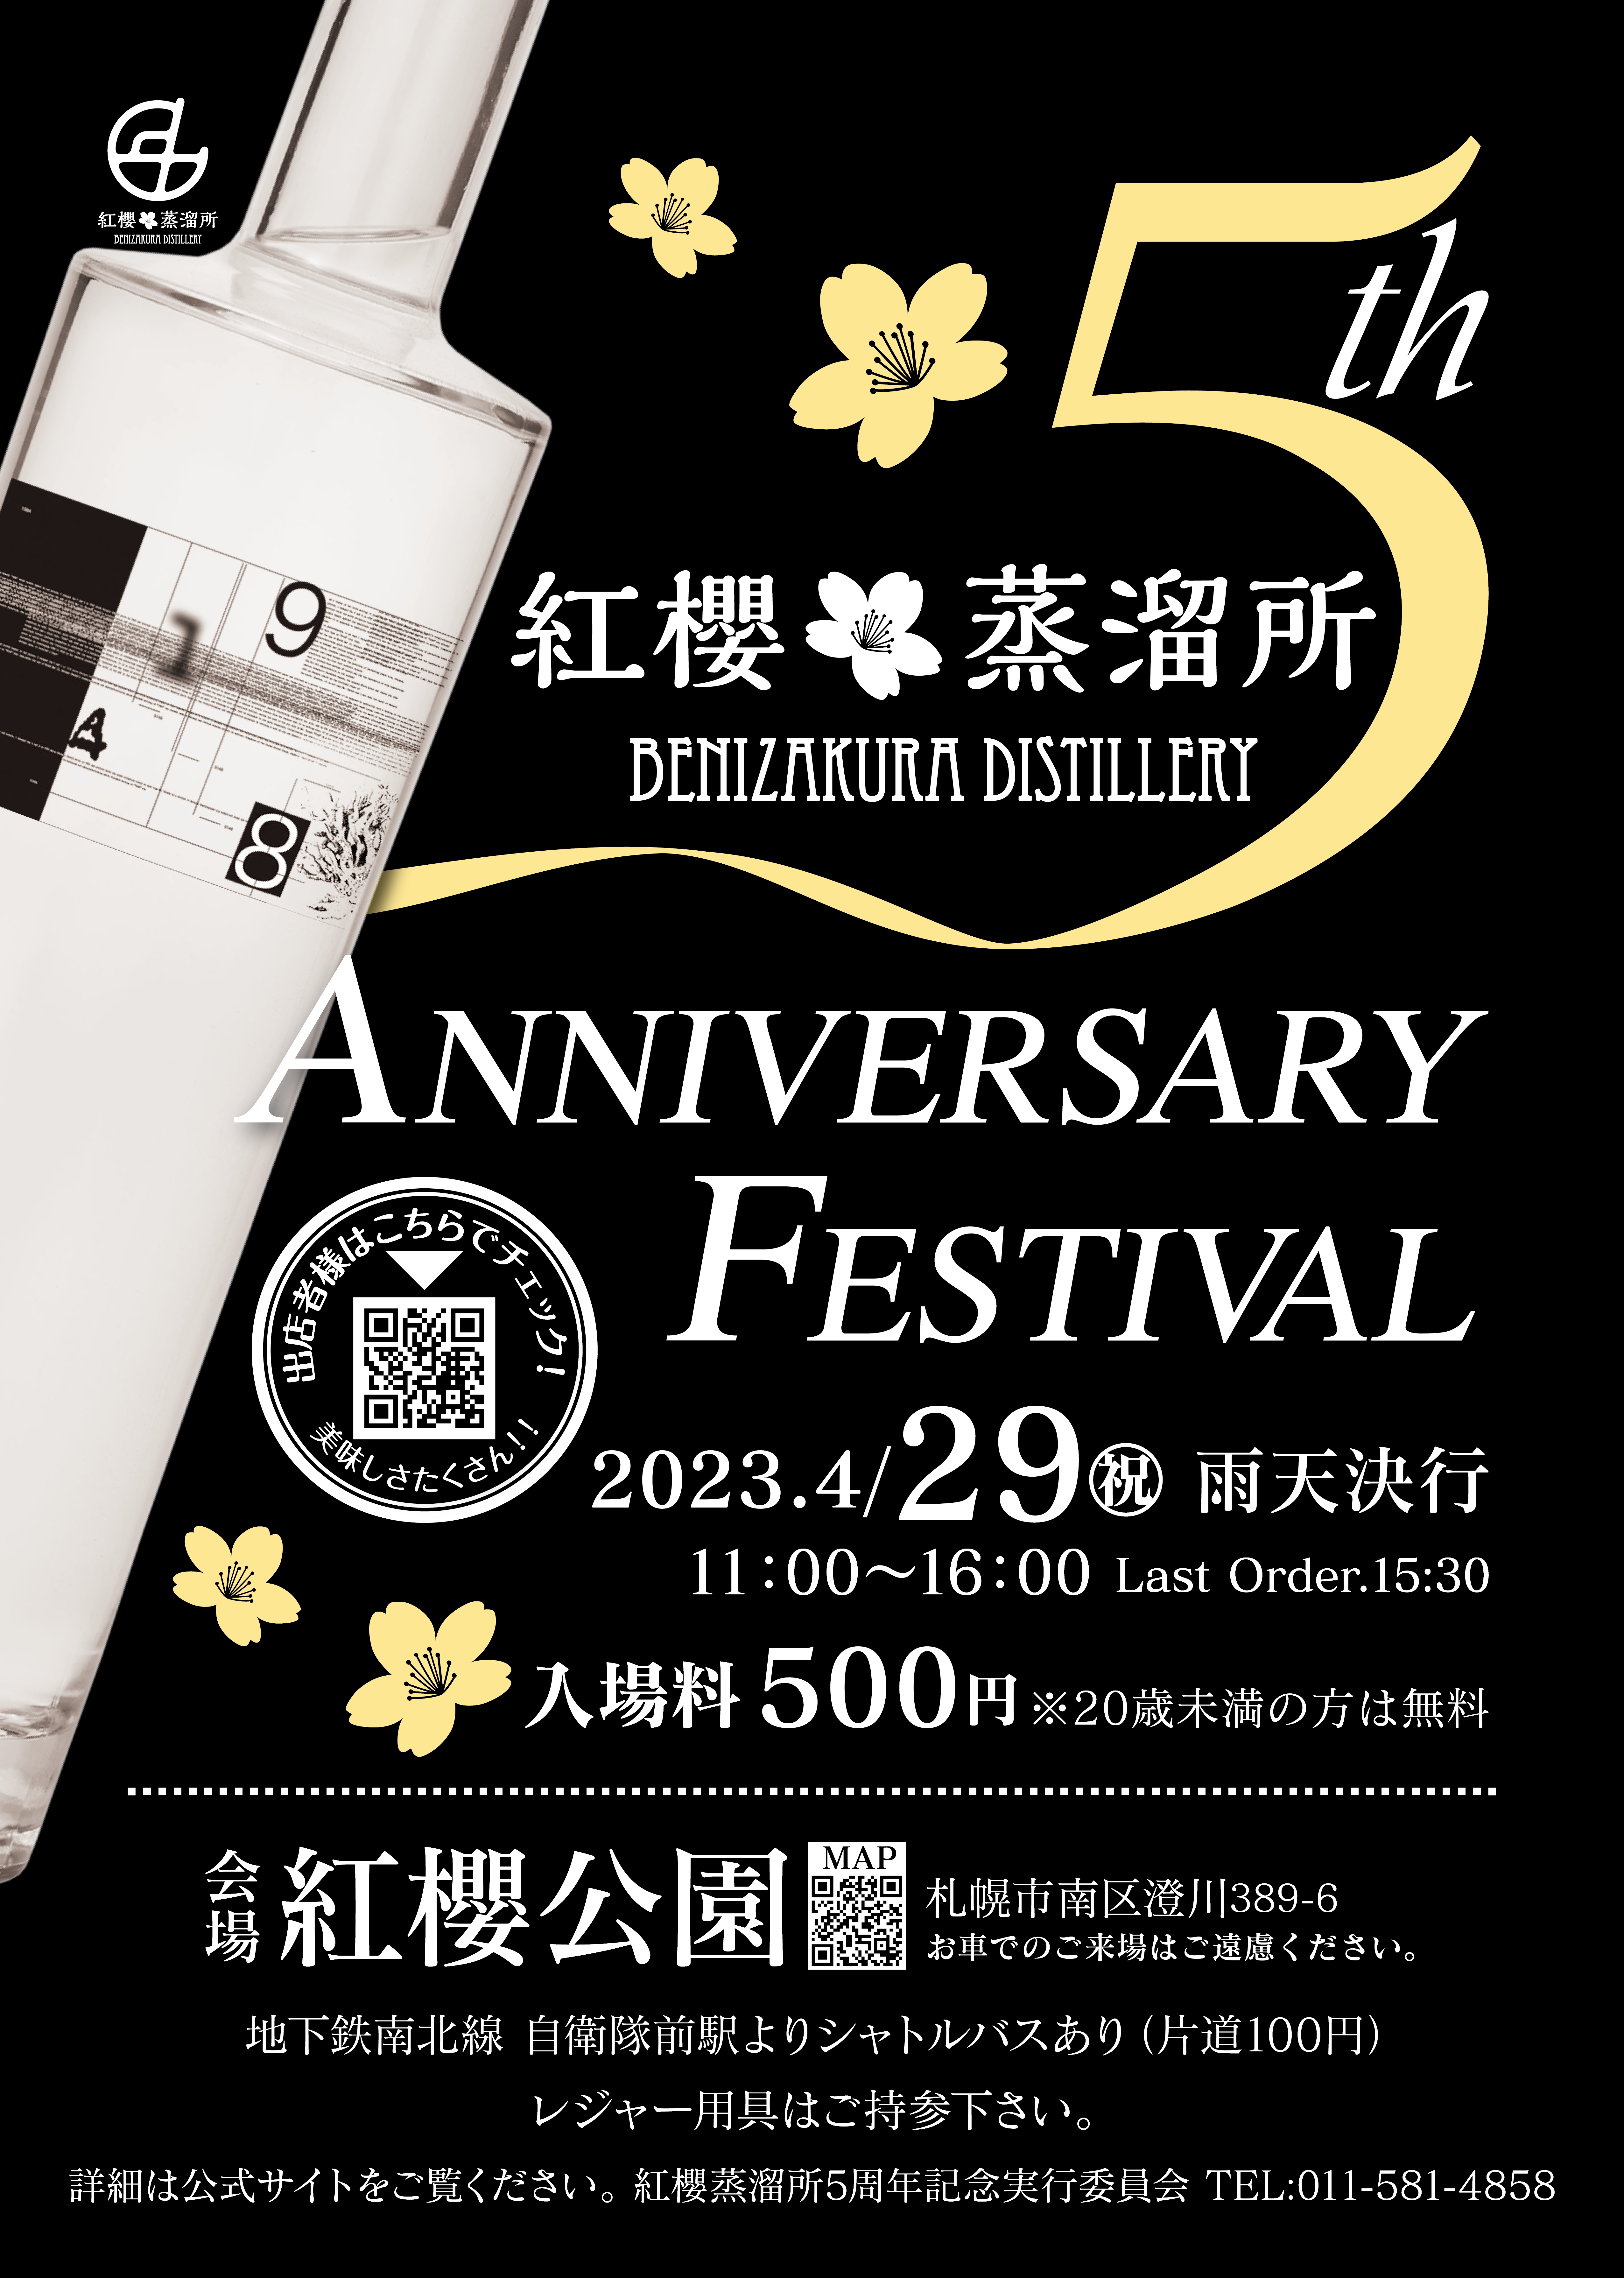 紅櫻蒸溜所５周年記念イベント開催のお知らせ